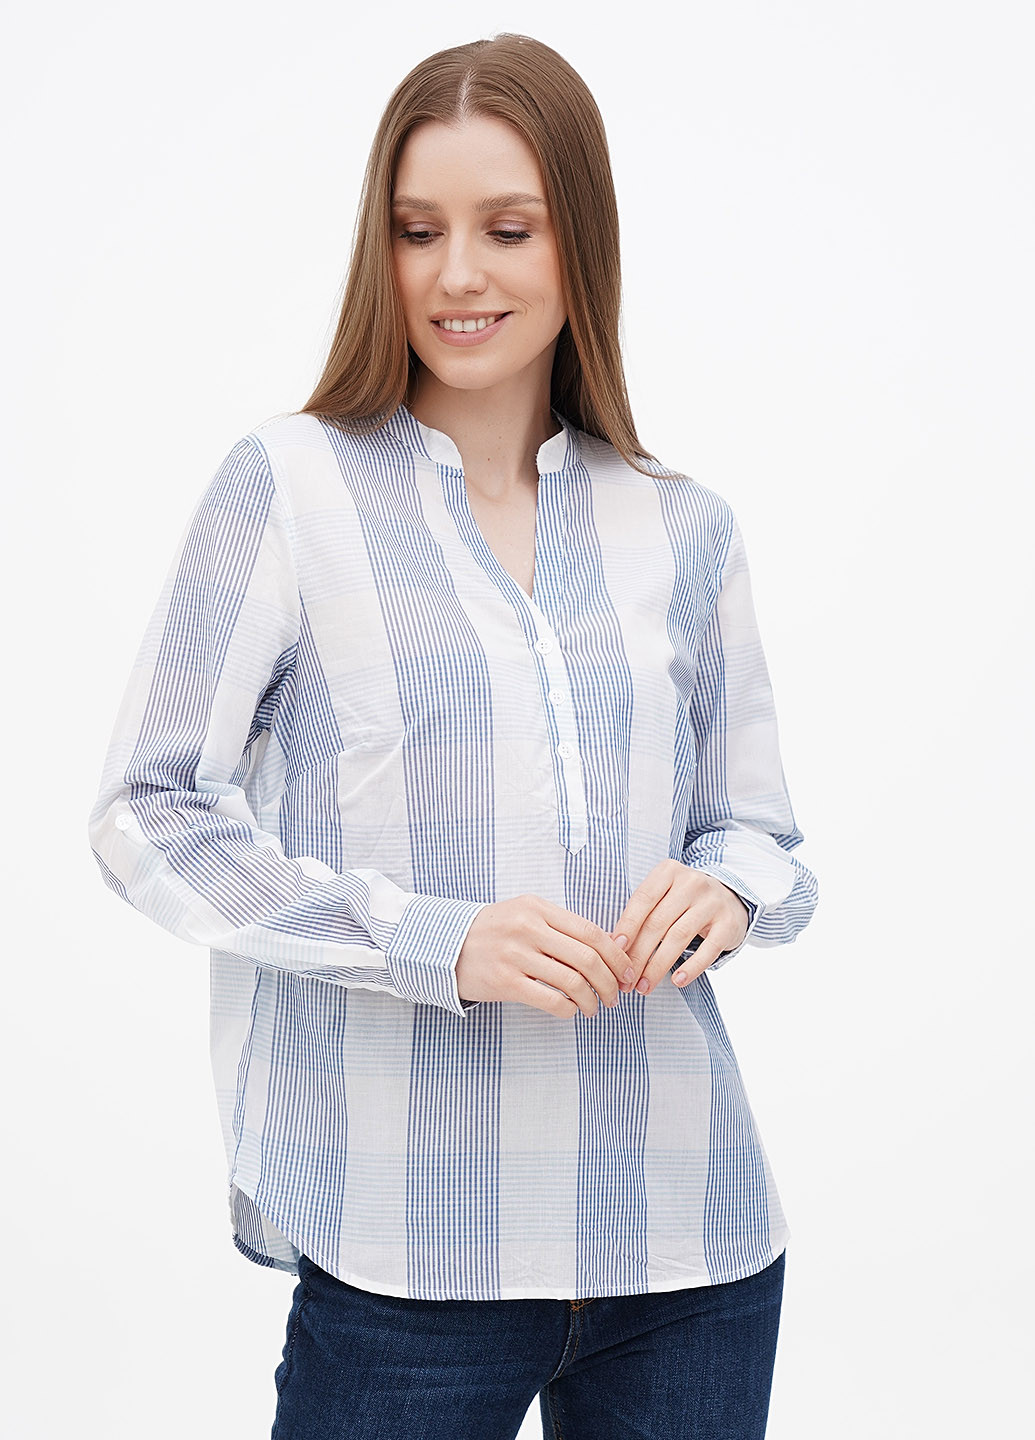 Комбинированная летняя блуза Collection L